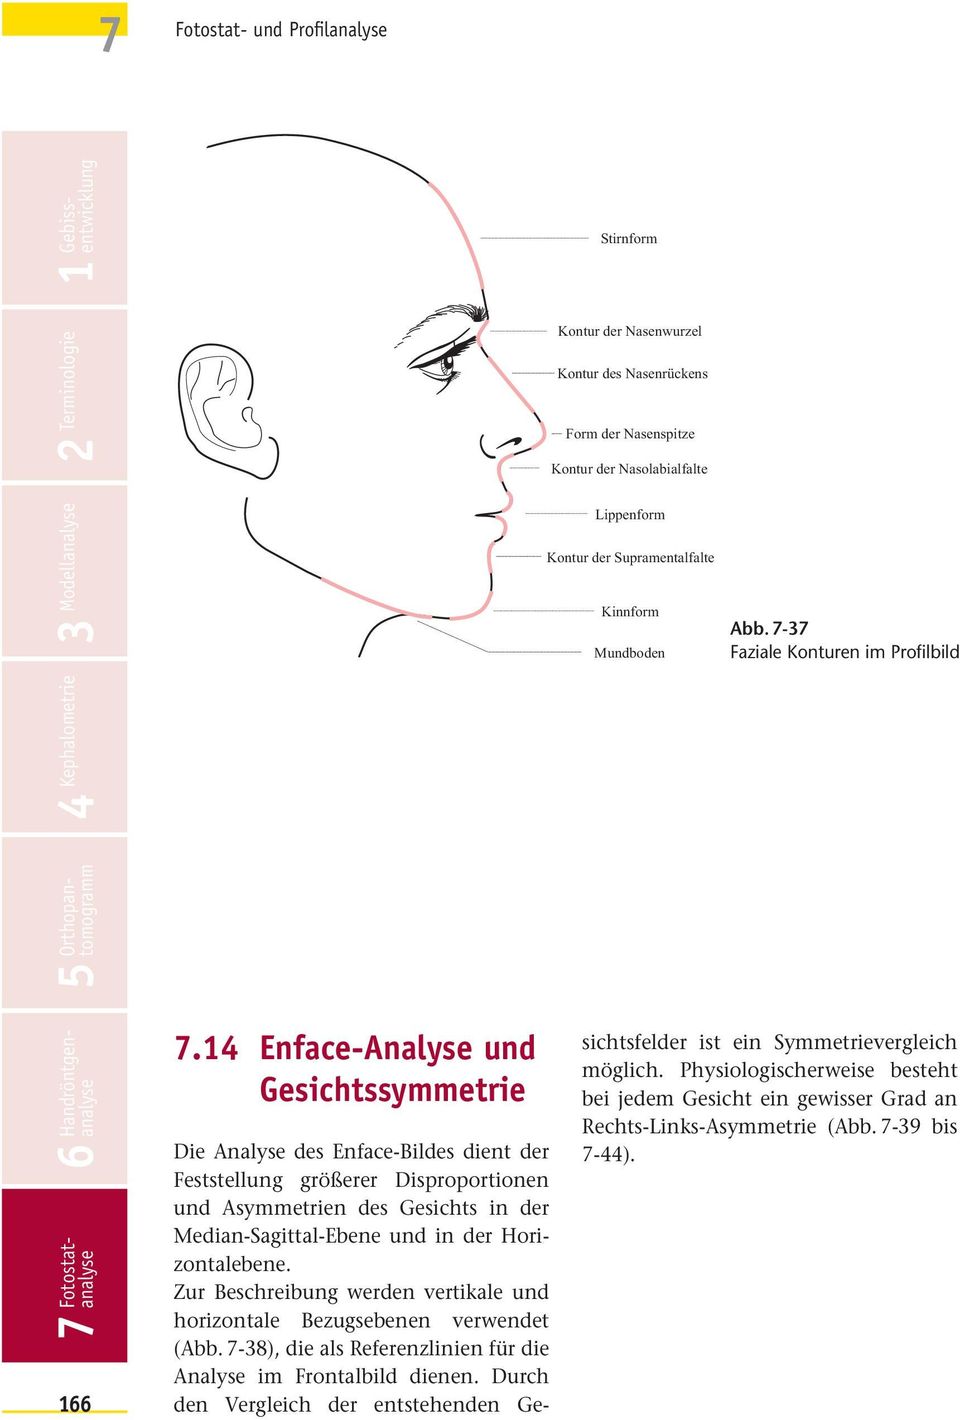 14 Enface-Analyse und Gesichtssymmetrie Die Analyse des Enface-Bildes dient der Feststellung größerer Disproportionen und Asymmetrien des Gesichts in der Median-Sagittal-Ebene und in der